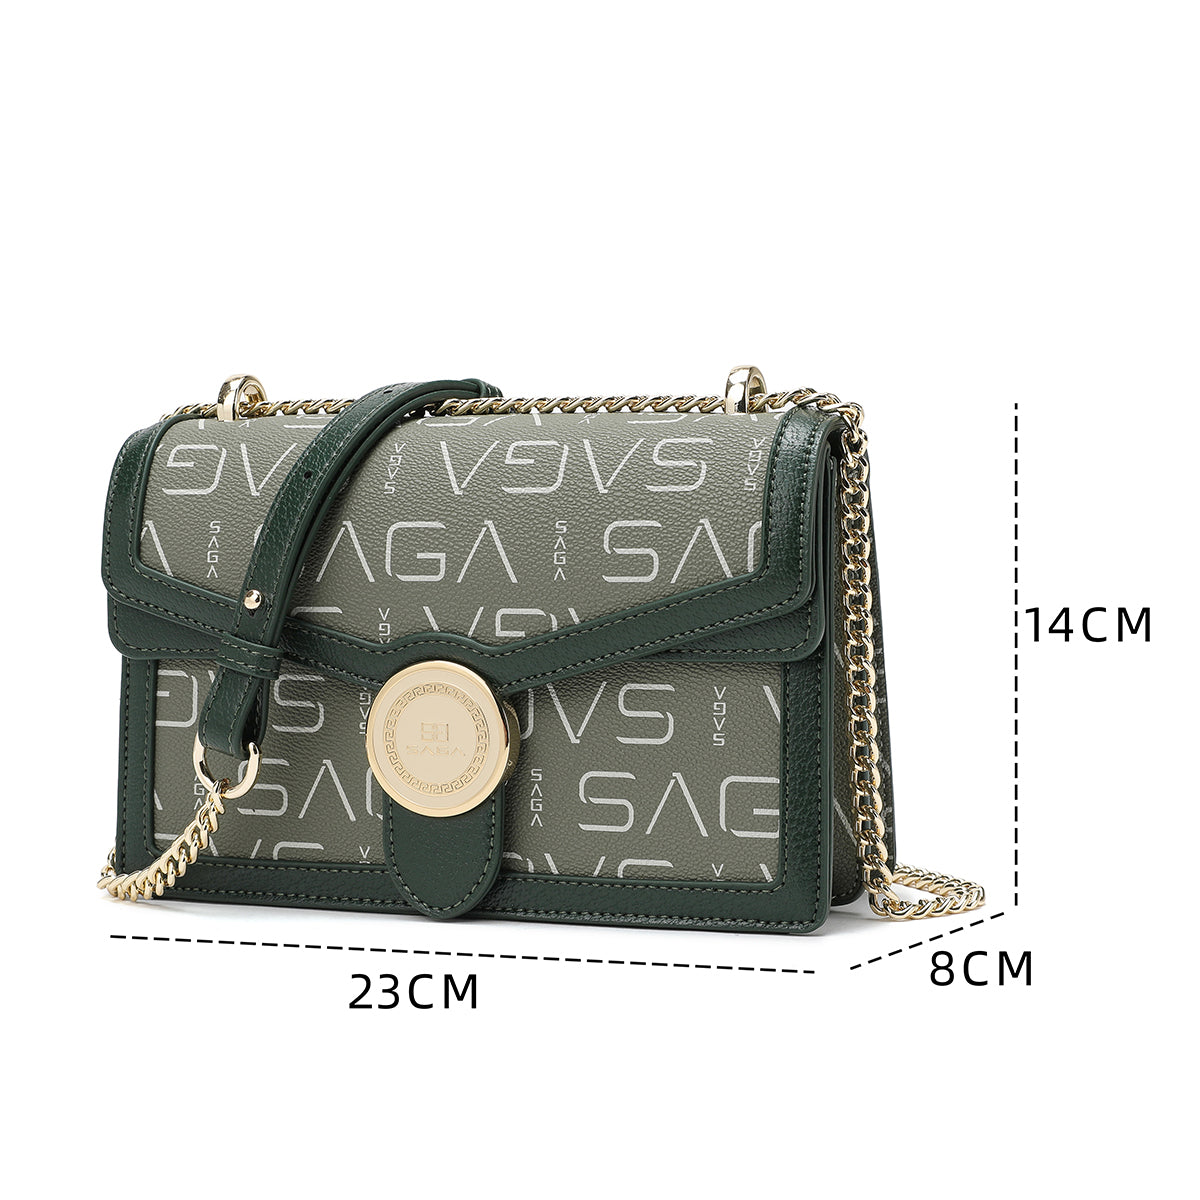 حقيبة يد نسائية فاخرة بتصميم عصري عرض 23سم لون أخضر أوليف